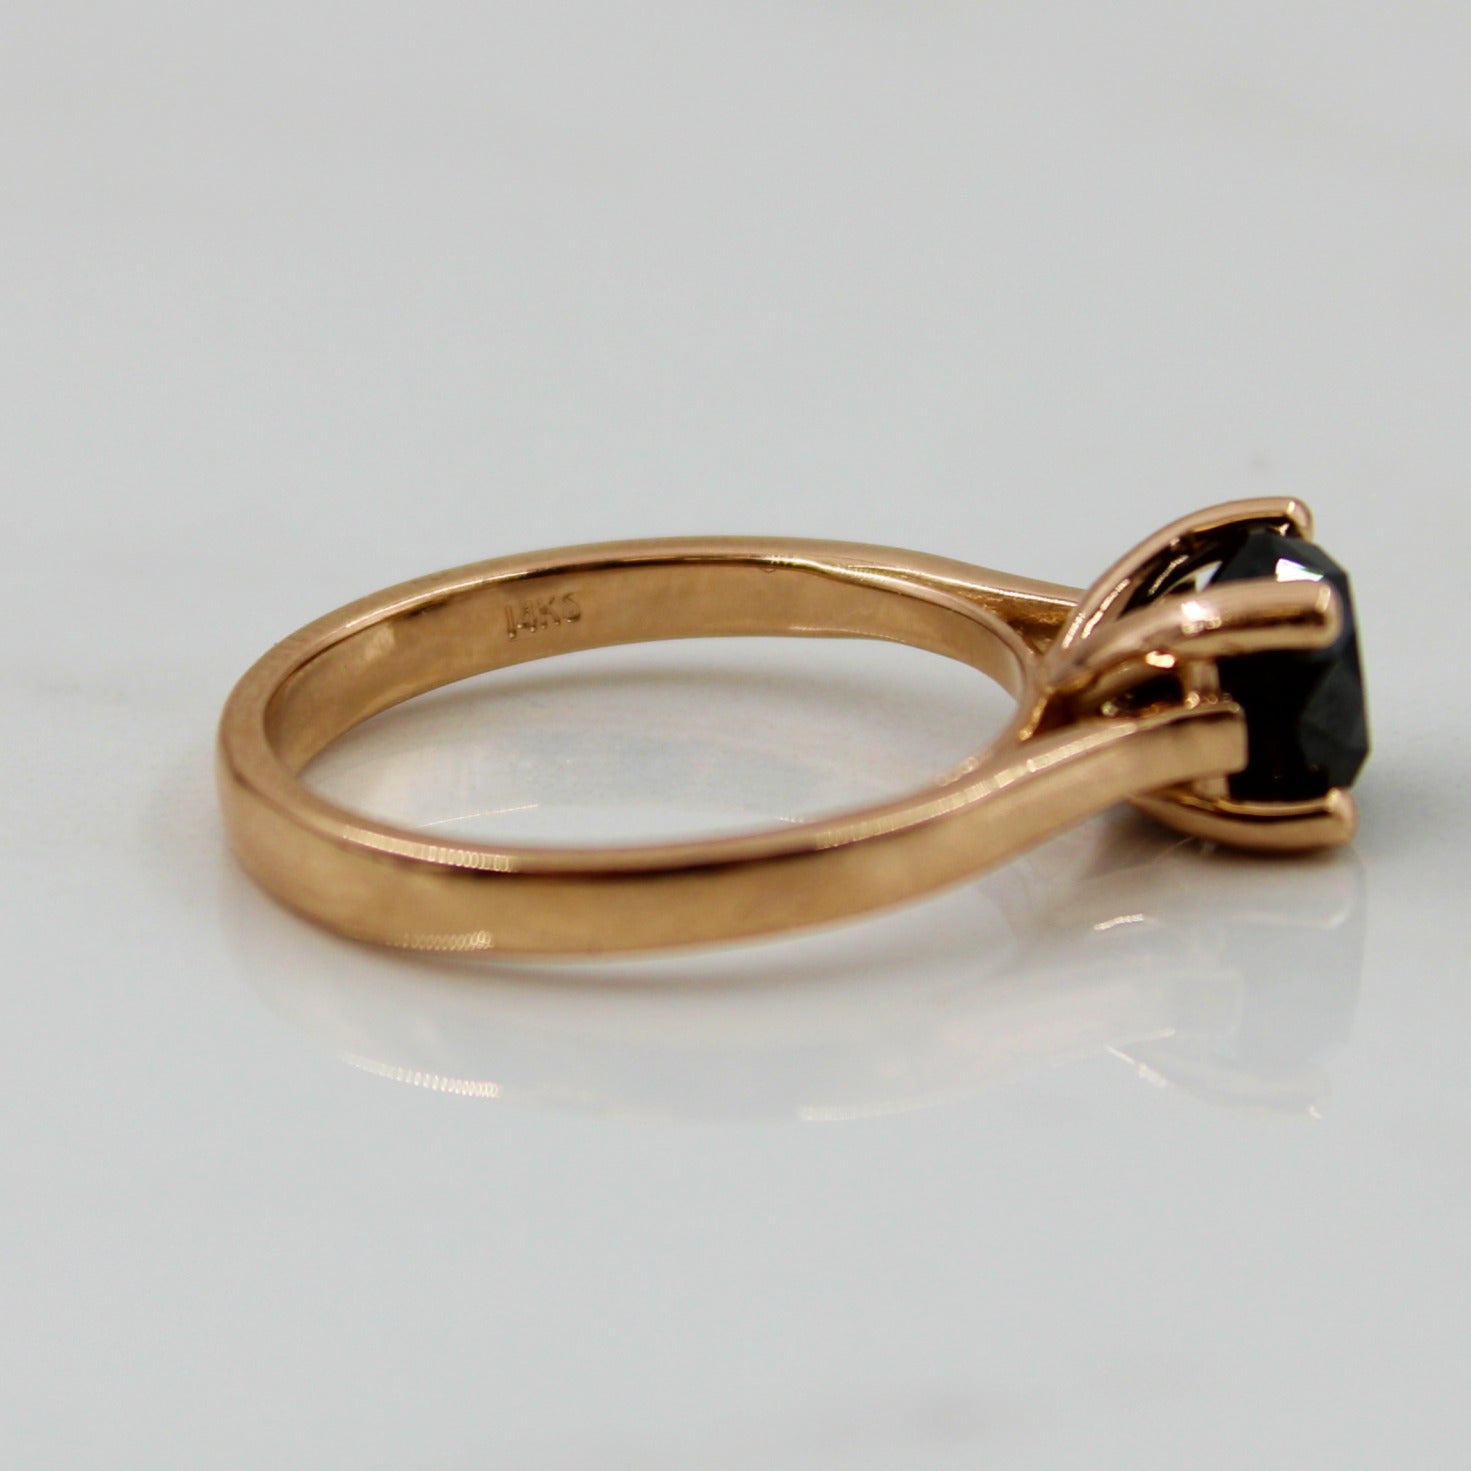 Black diamond ring, antique refurbished gold rings